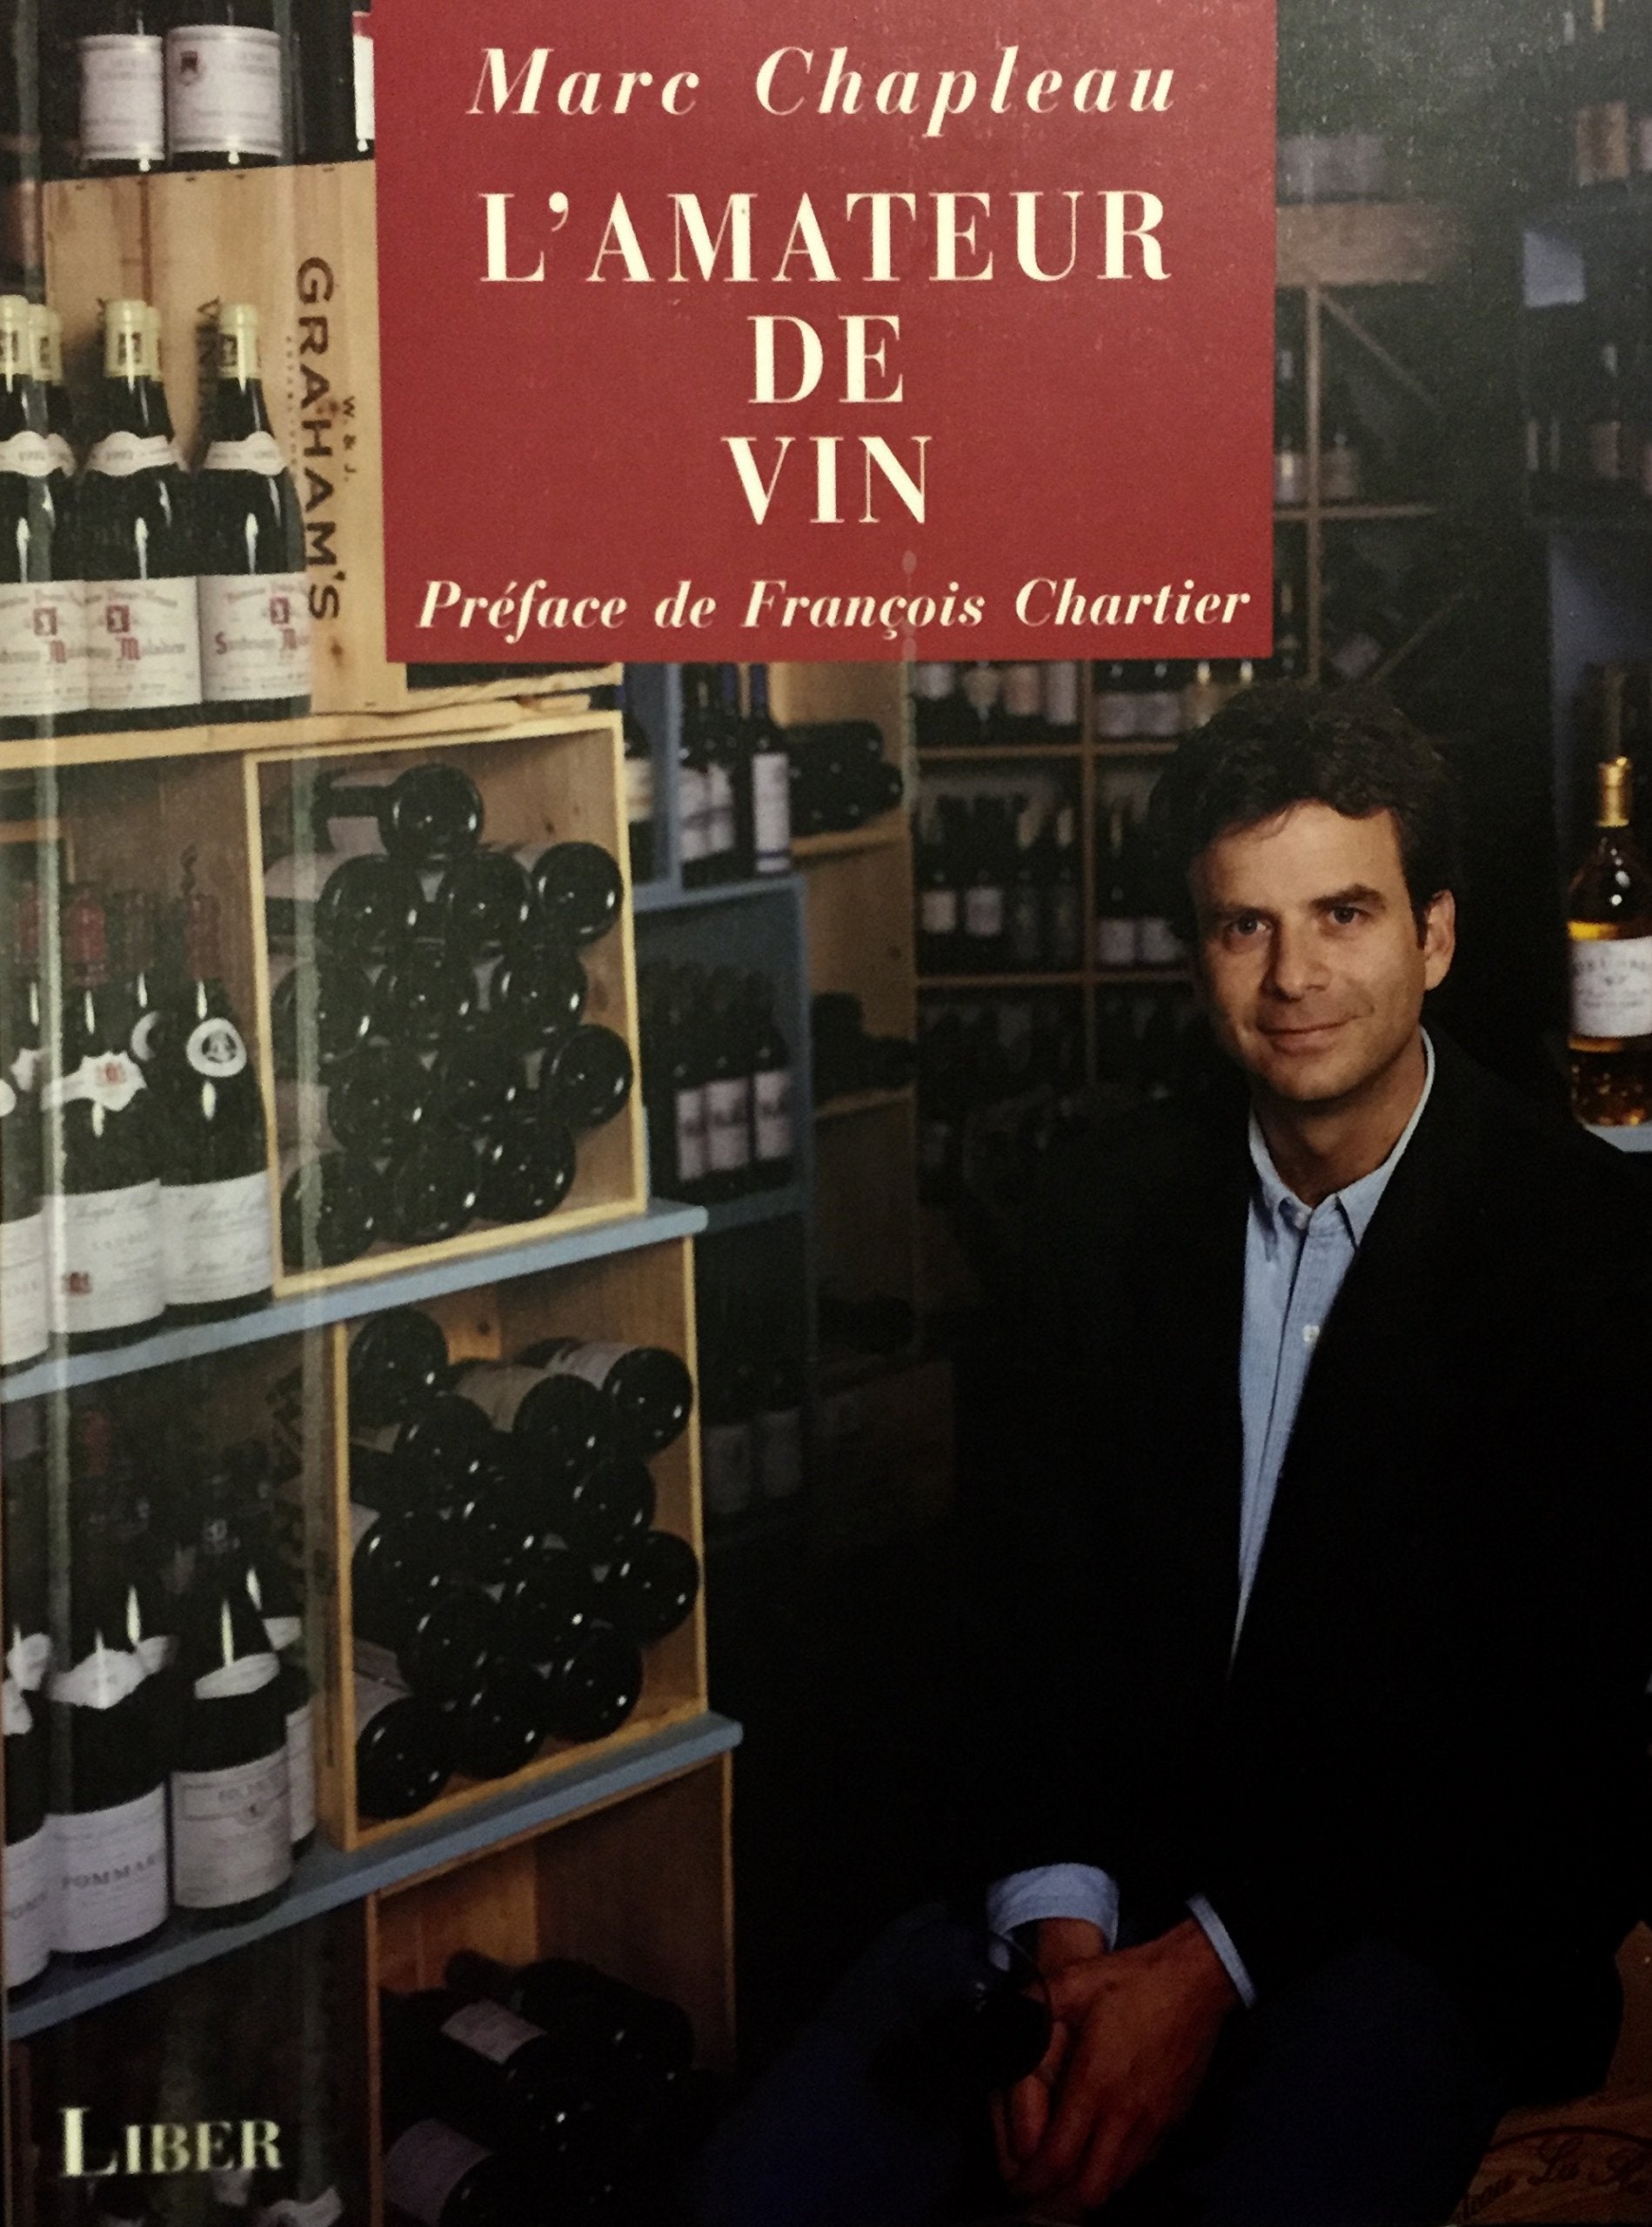 Livre ISBN 2921569264 L'amateur de vin (Marc Chapleau)